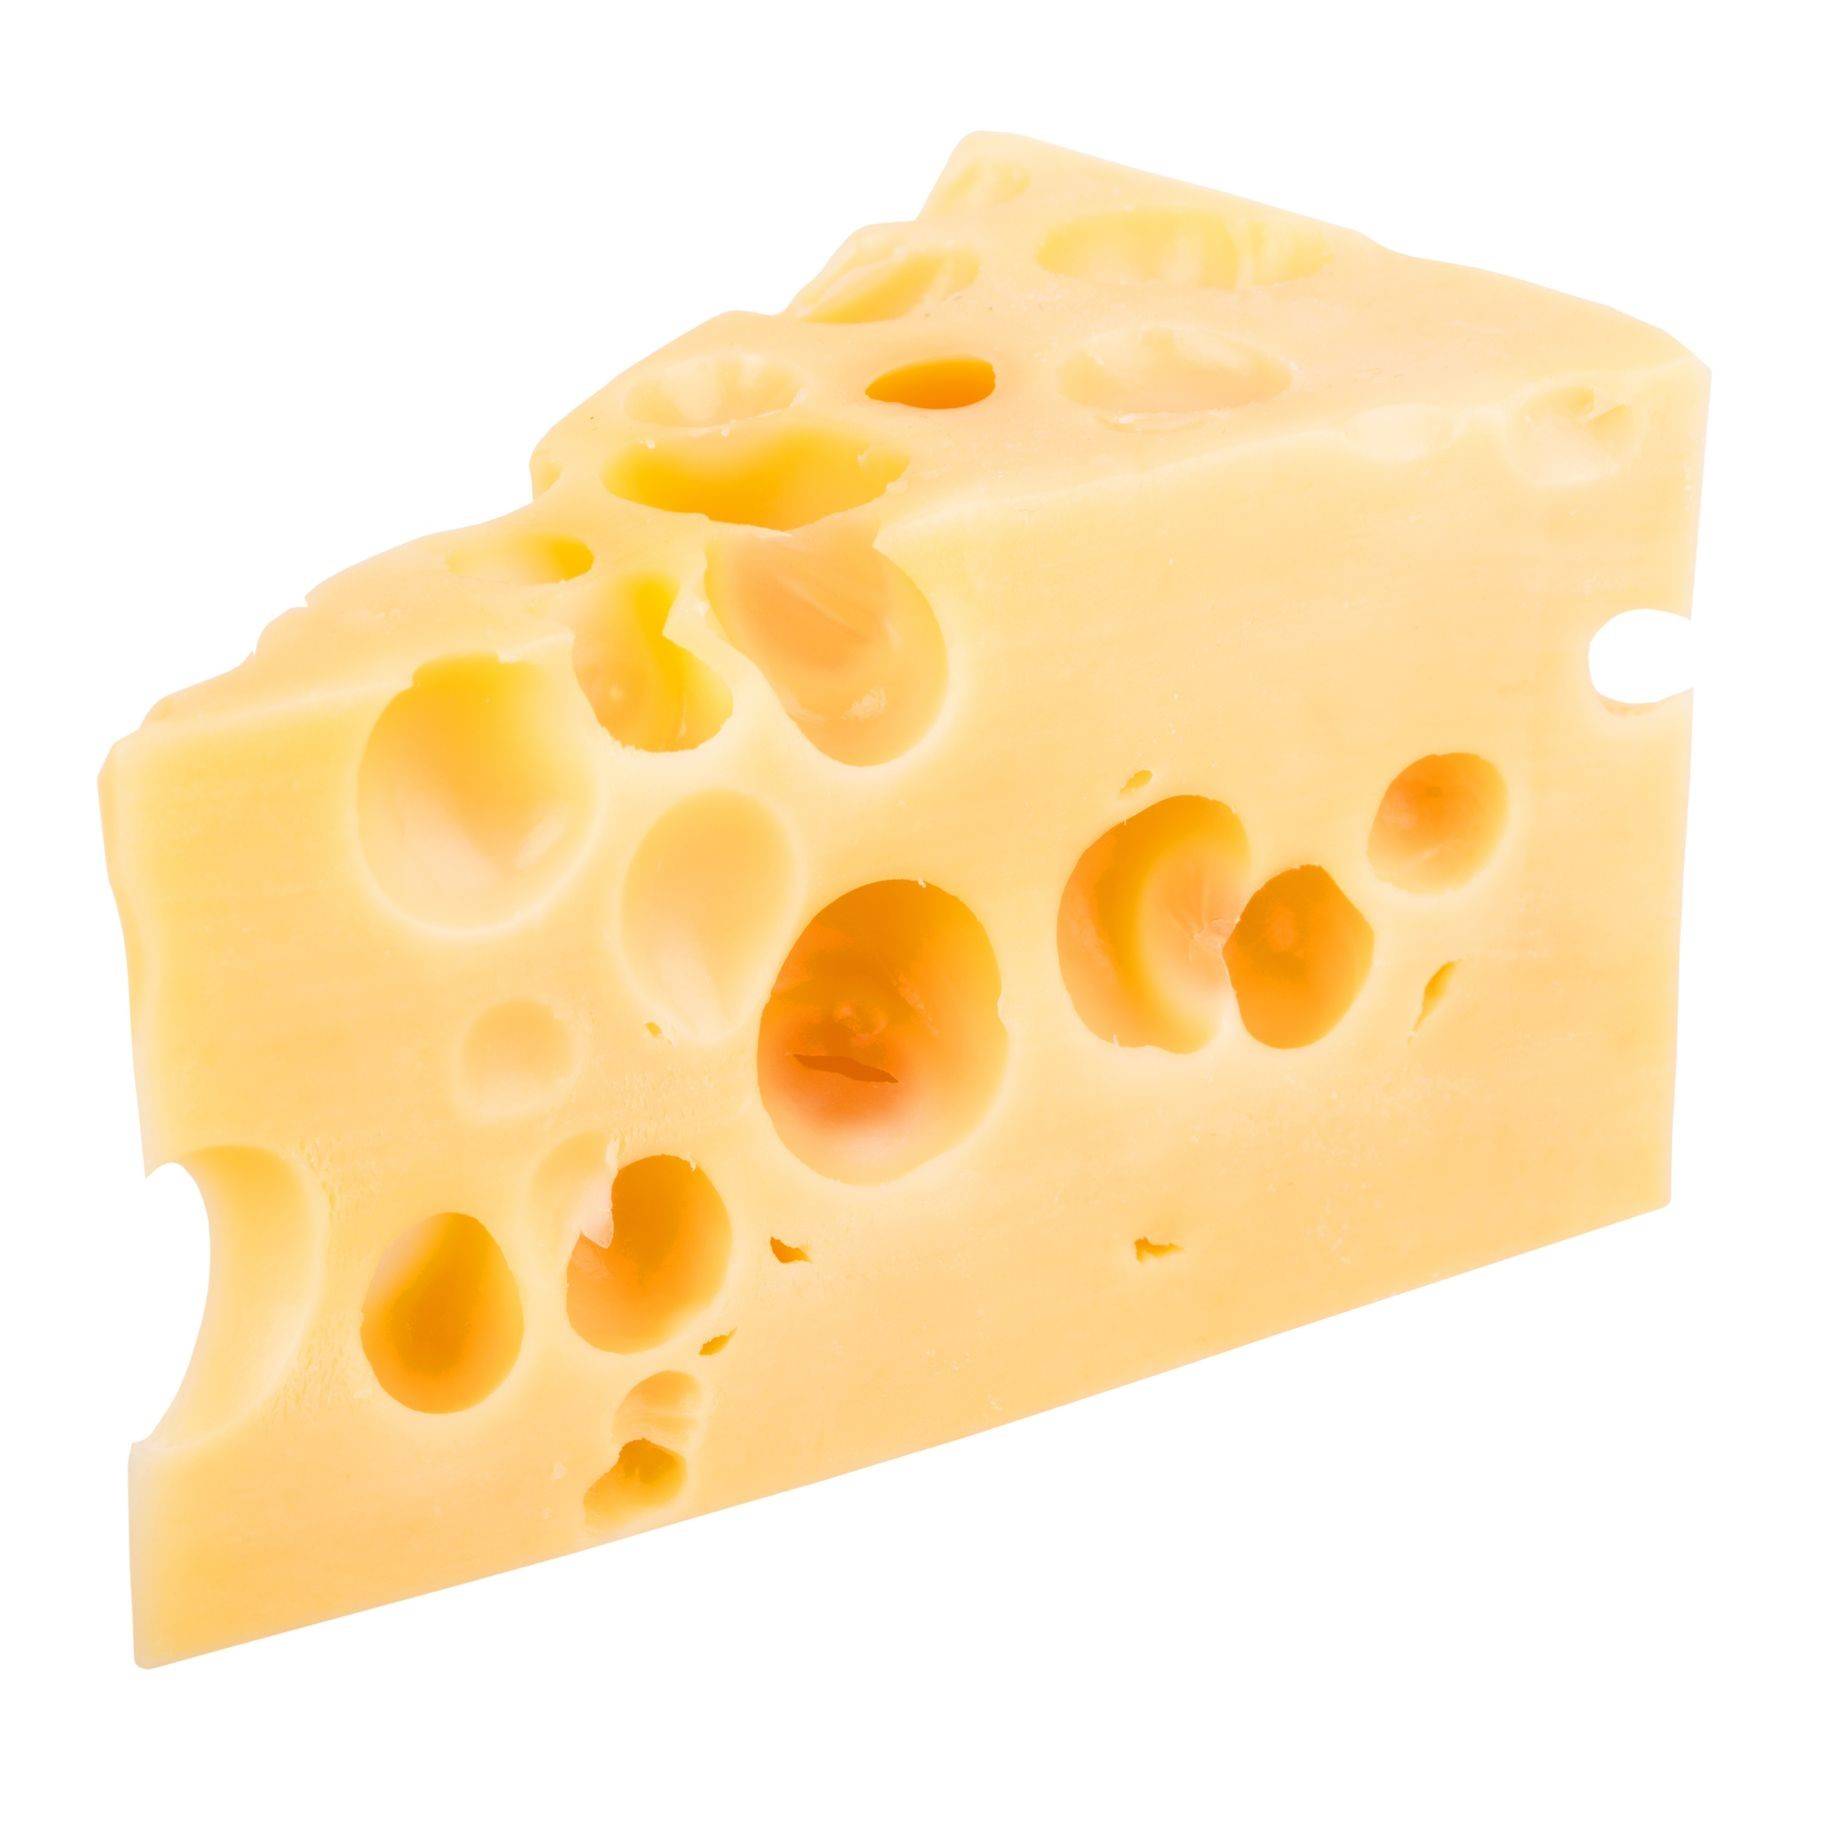 瑞士奶酪上的洞被称为"眼睛",为什么有的奶酪会有洞?有的没有